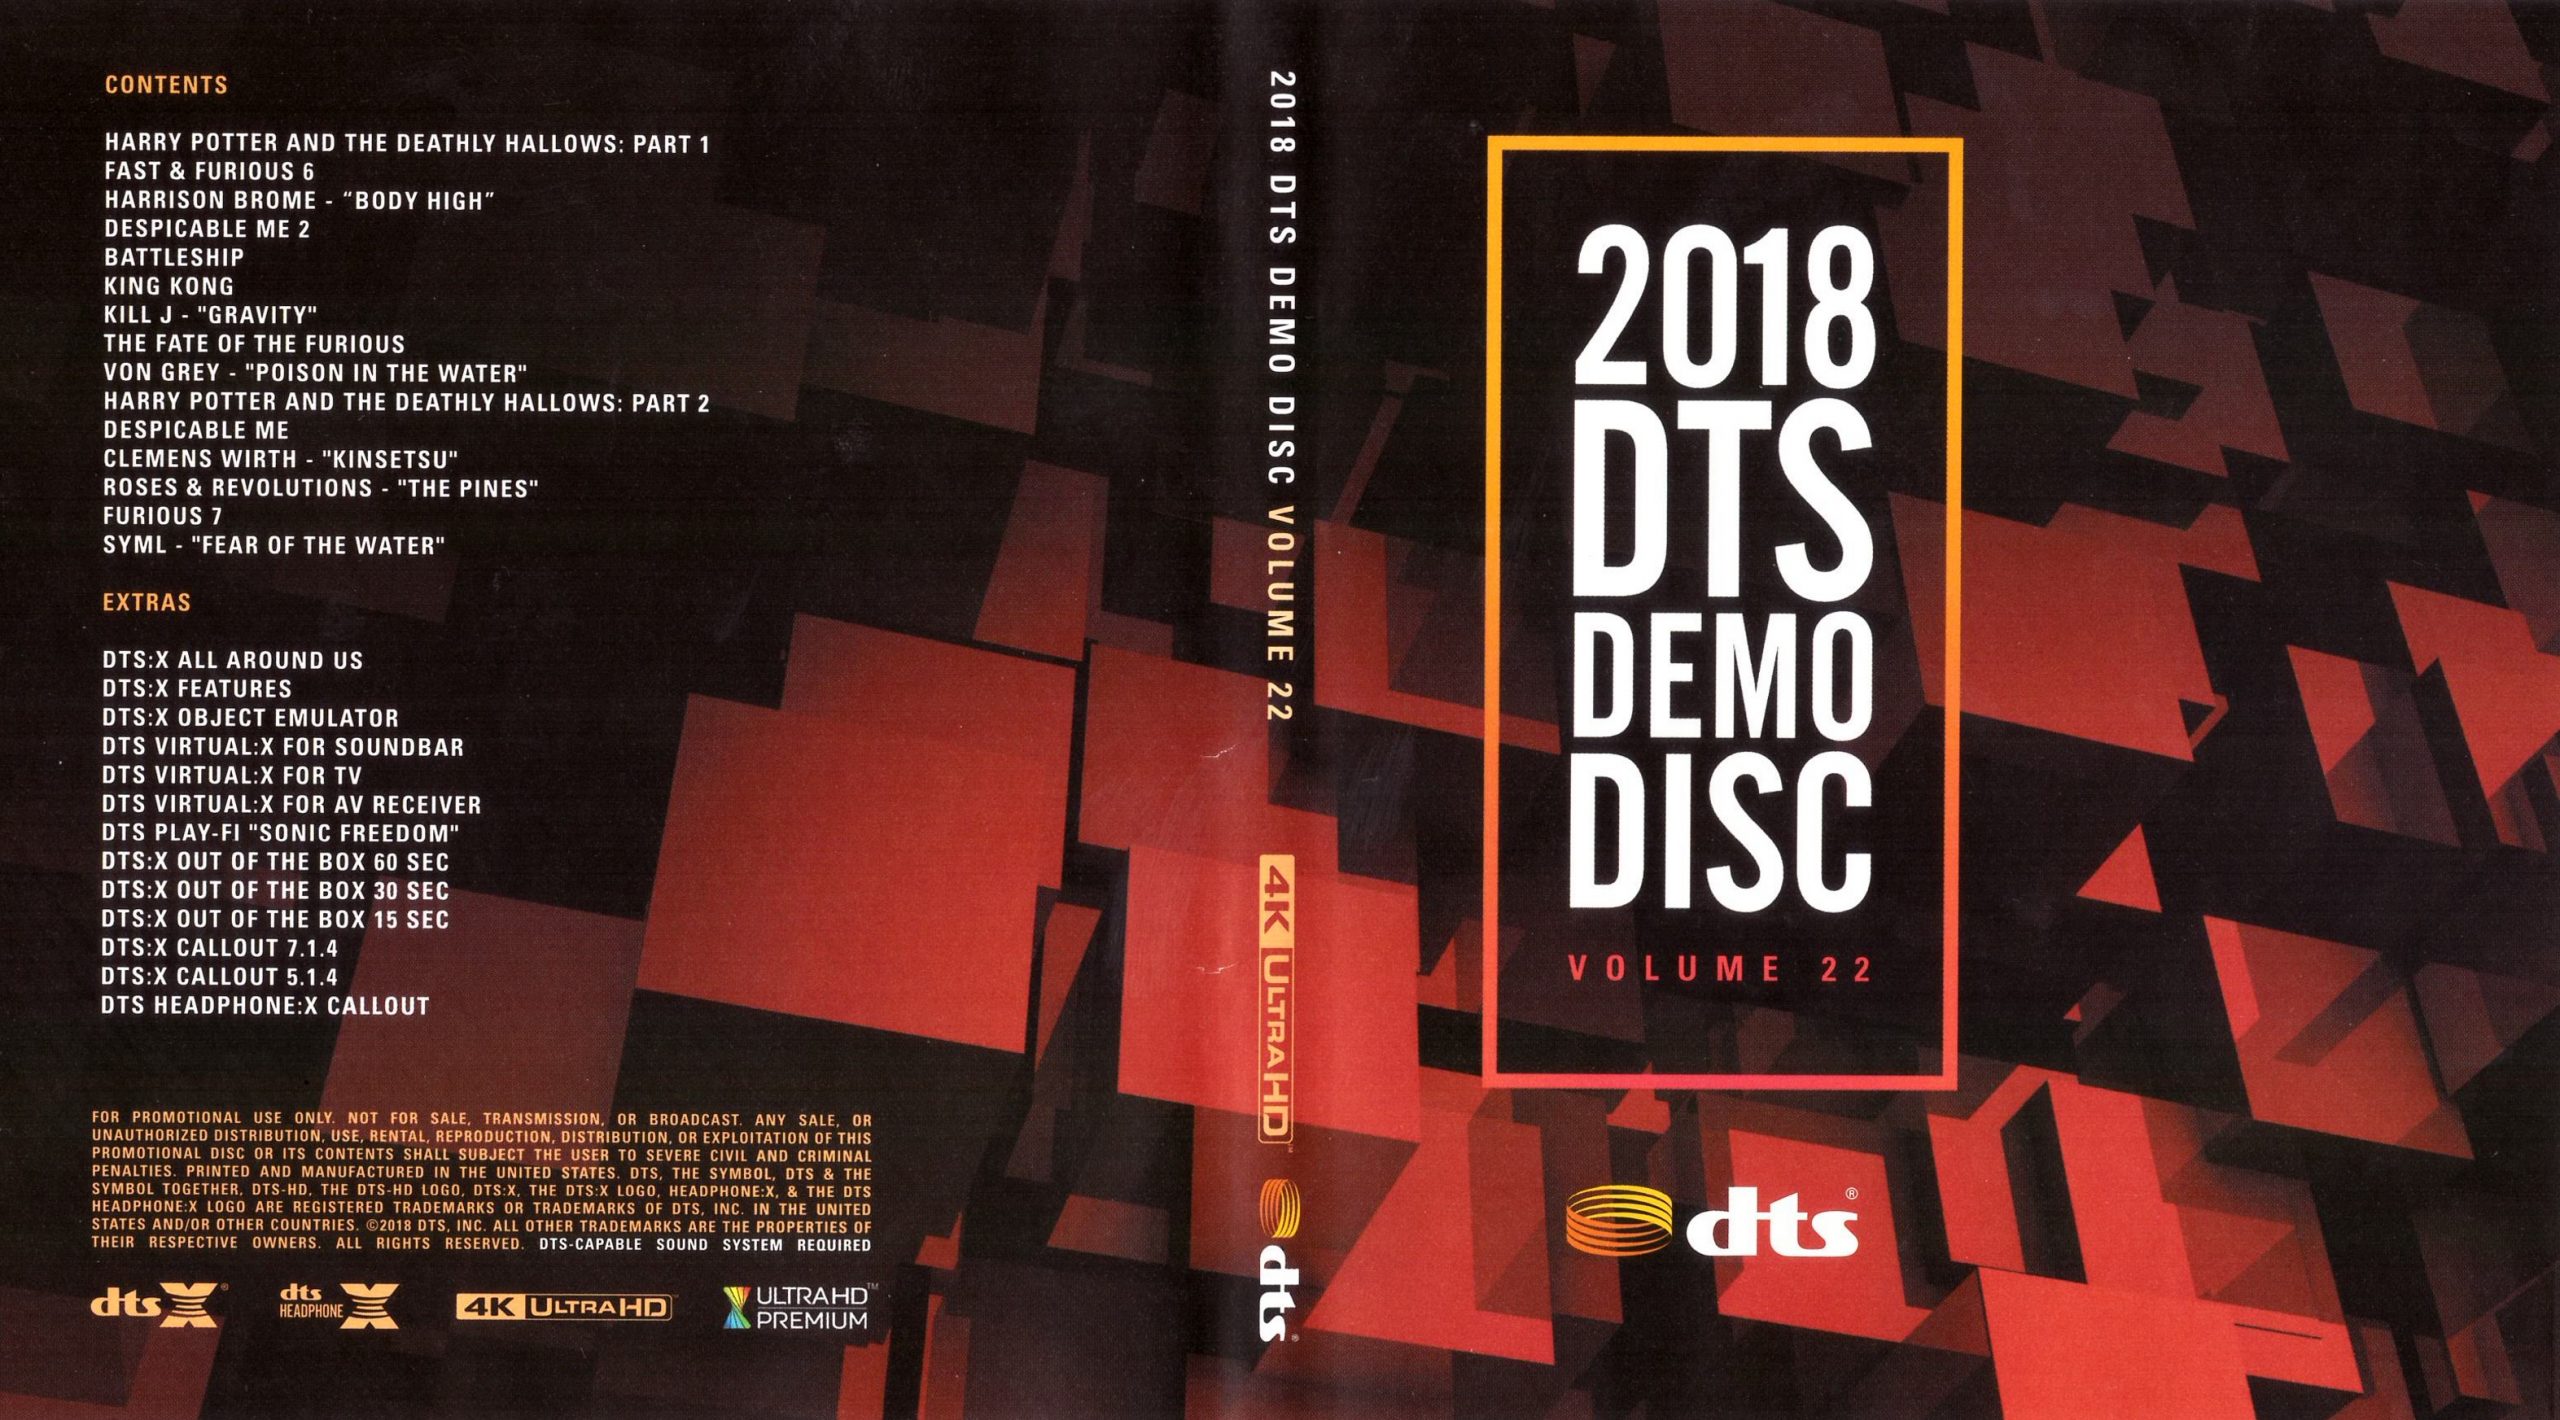 DTS蓝光演示碟 2018 4K UHD DTS Demo Disc Vol.22 H.265 HDR 4KUltraHD DTS-X 7.1